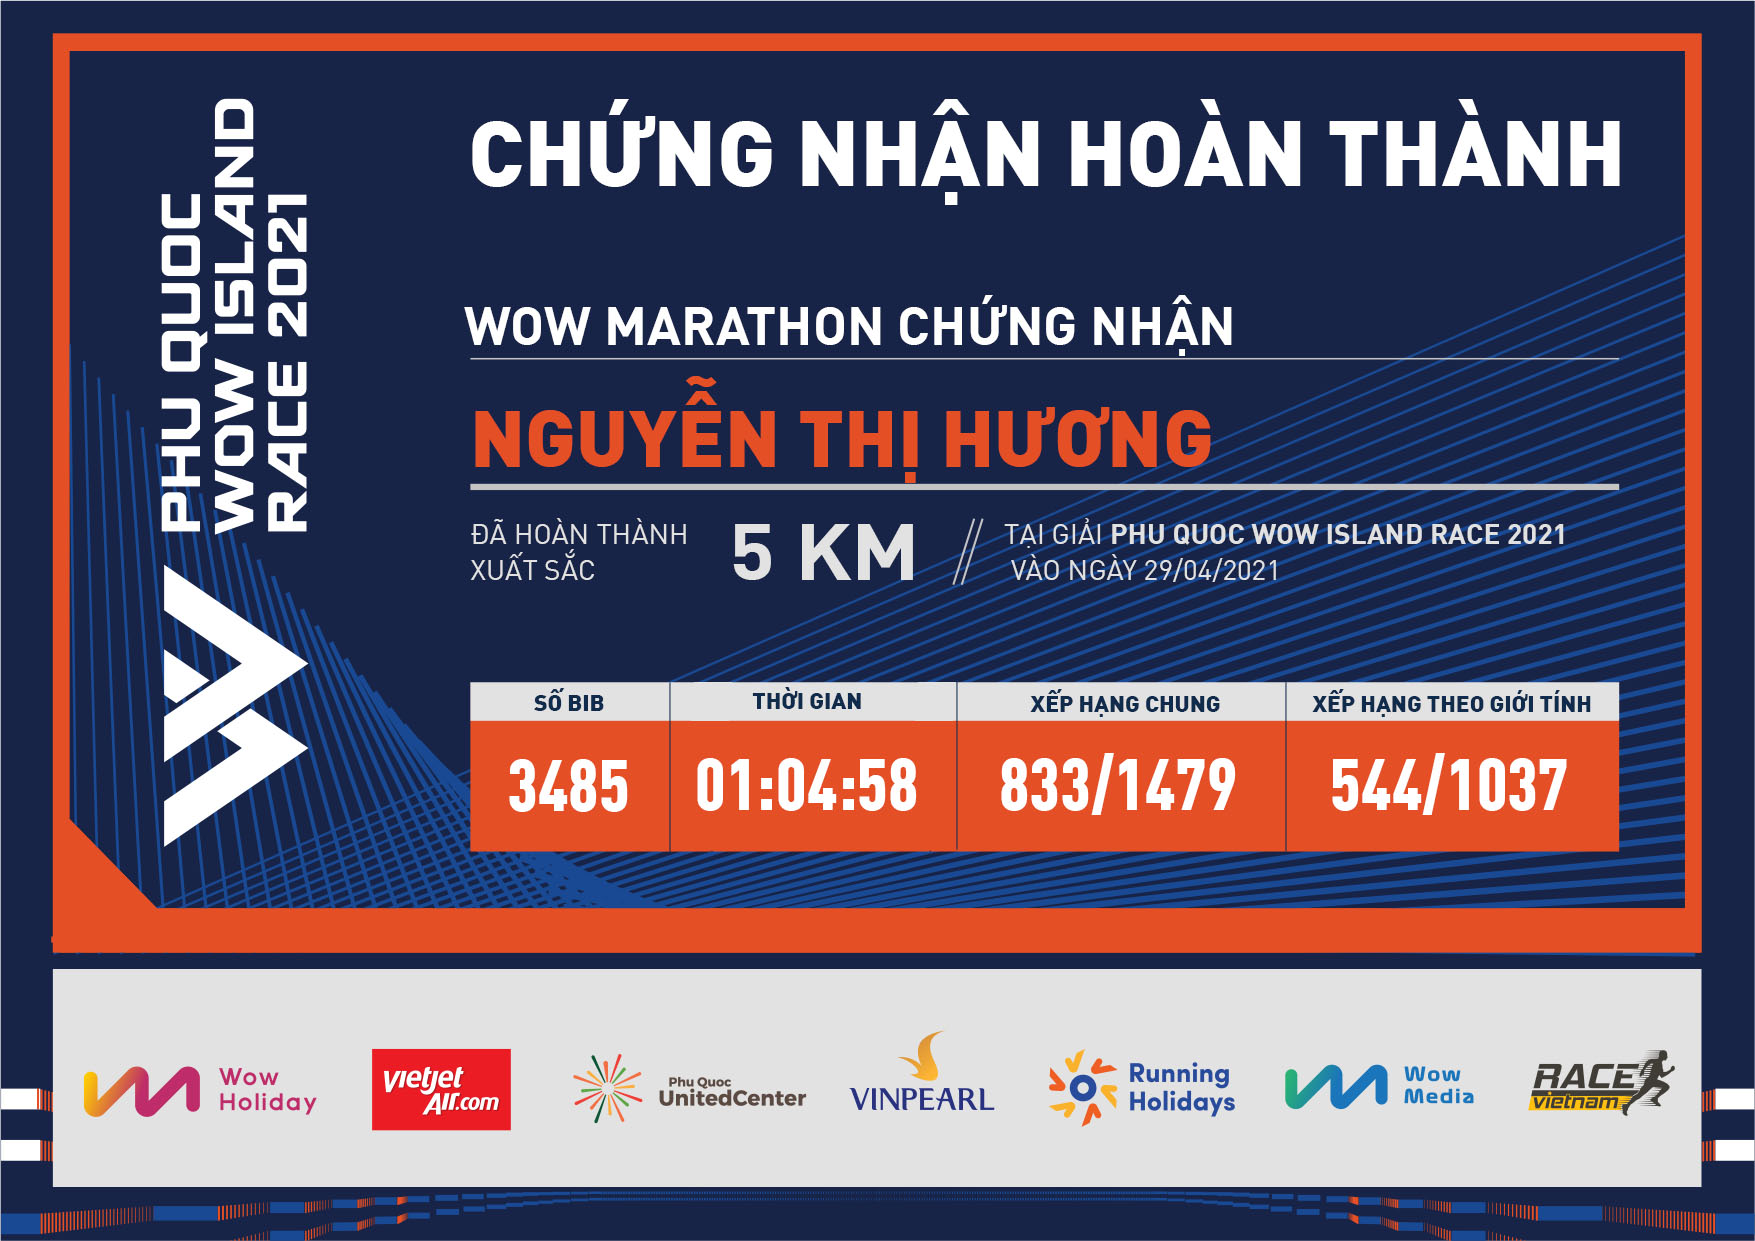 3485 - Nguyễn Thị Hương